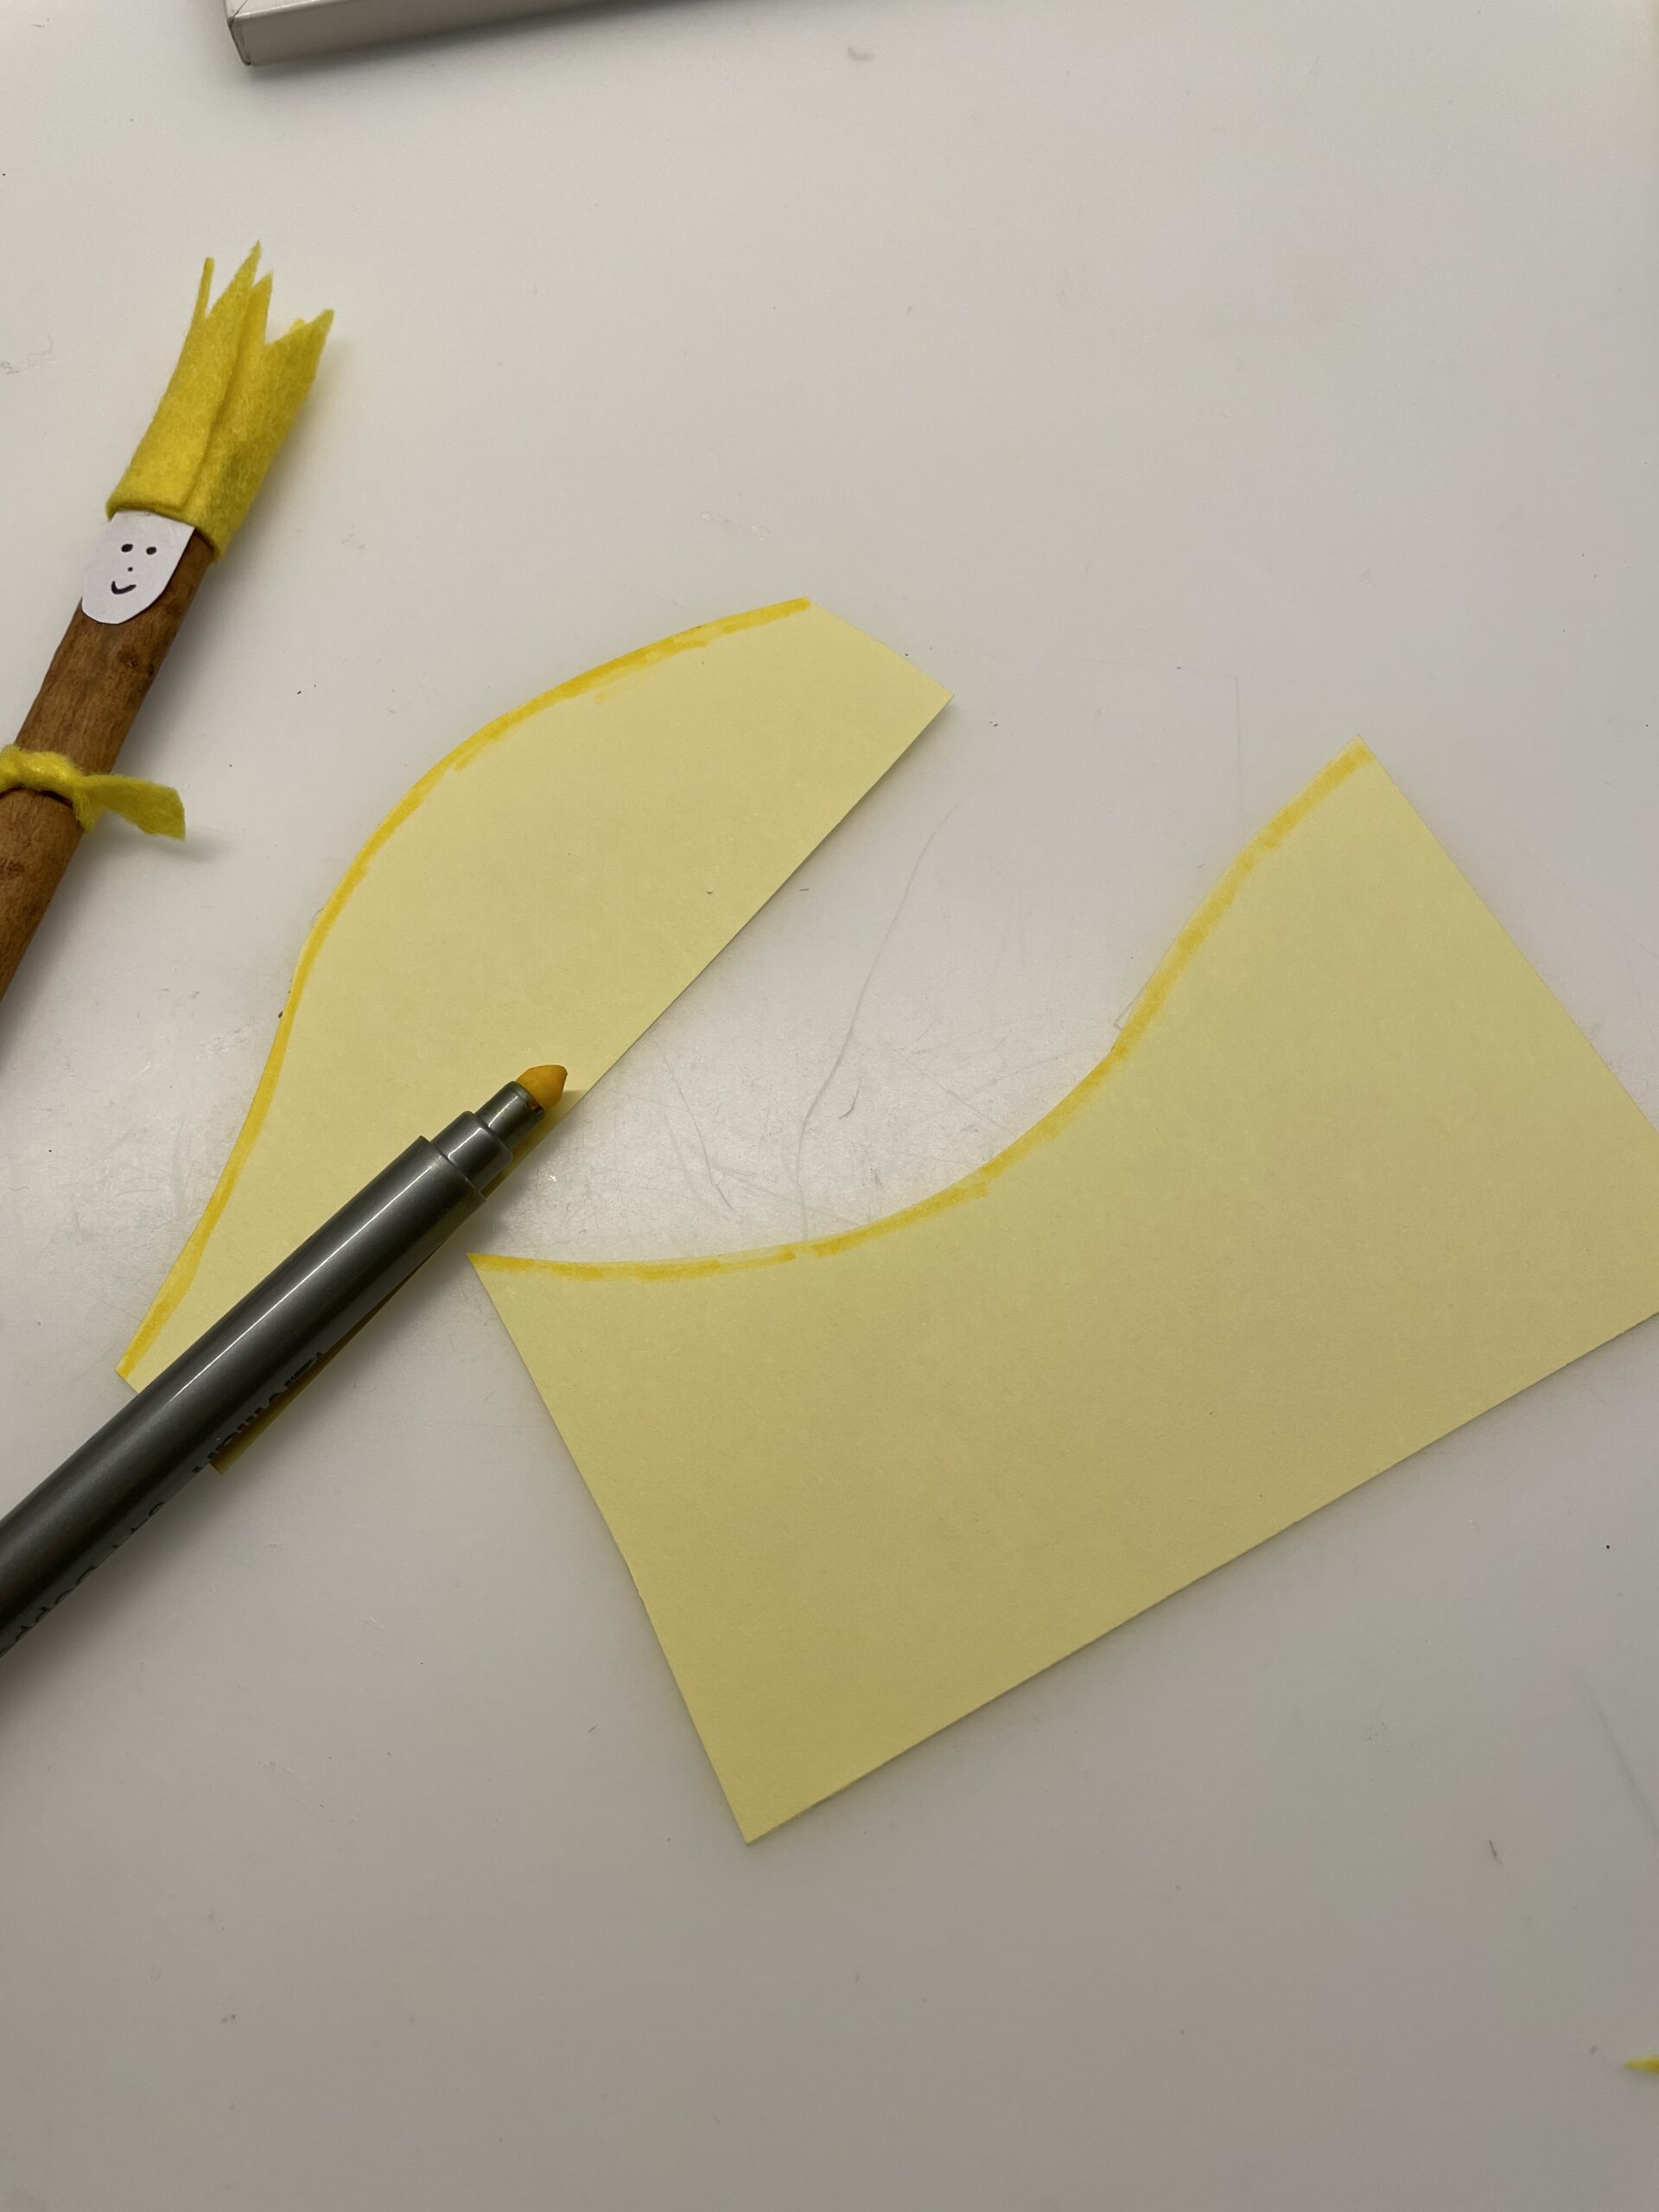 Bild zum Schritt 21 für das Bastel- und DIY-Abenteuer für Kinder: 'Schneidet das gelbe Blatt wellig. Macht zwei Lagen mit zwei...'